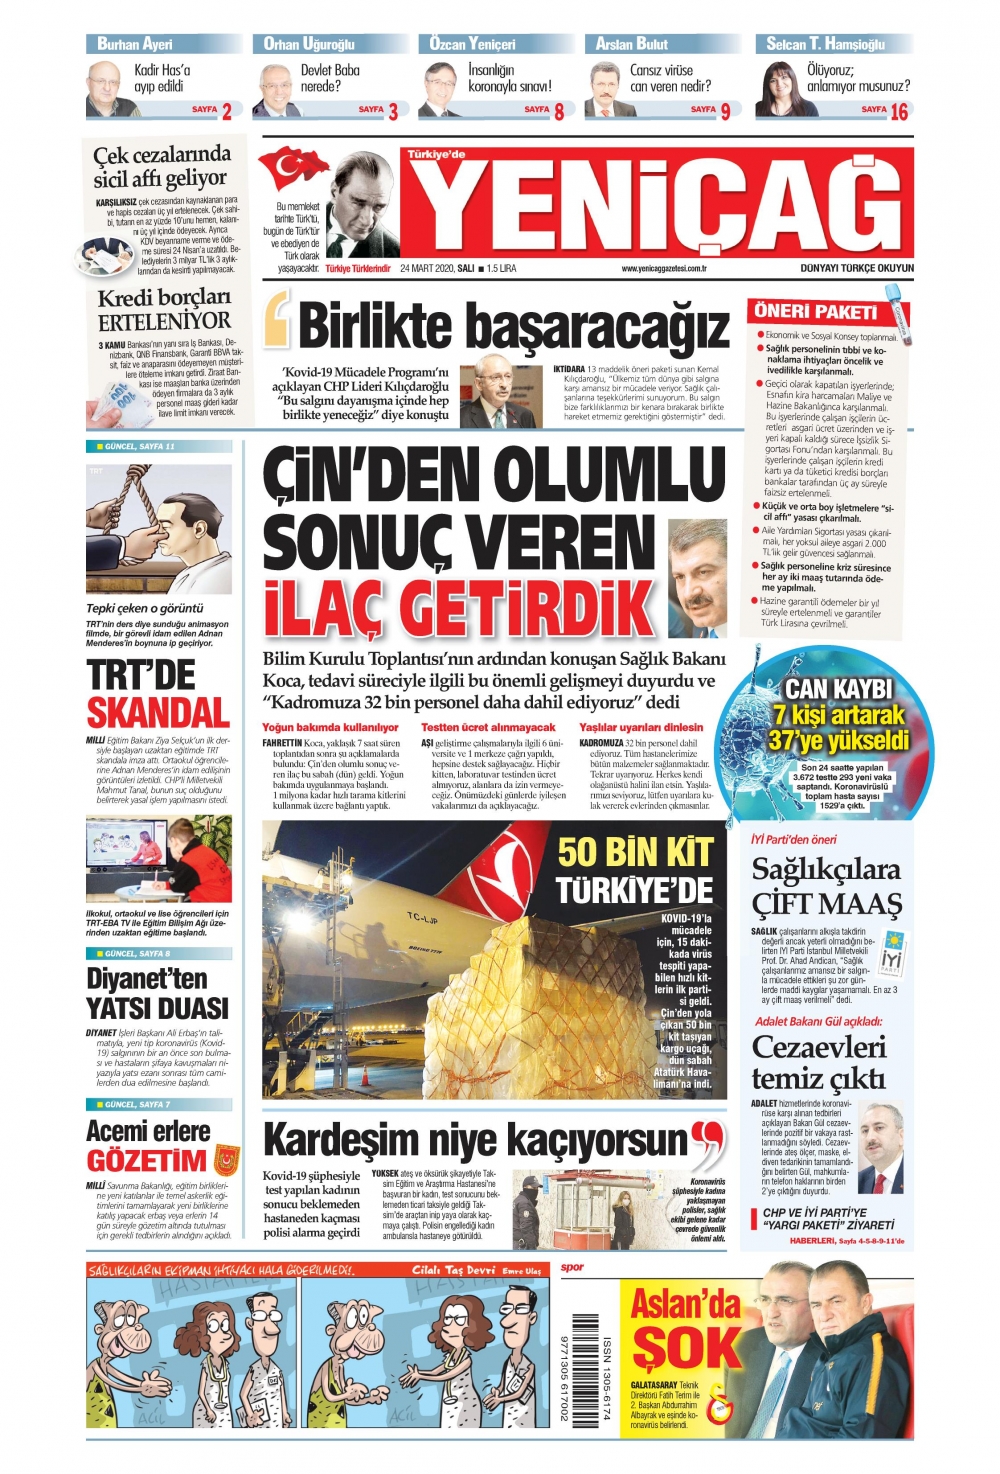 Gazeteler bugün ne yazdı? 24 Mart Gazete Manşetleri 18